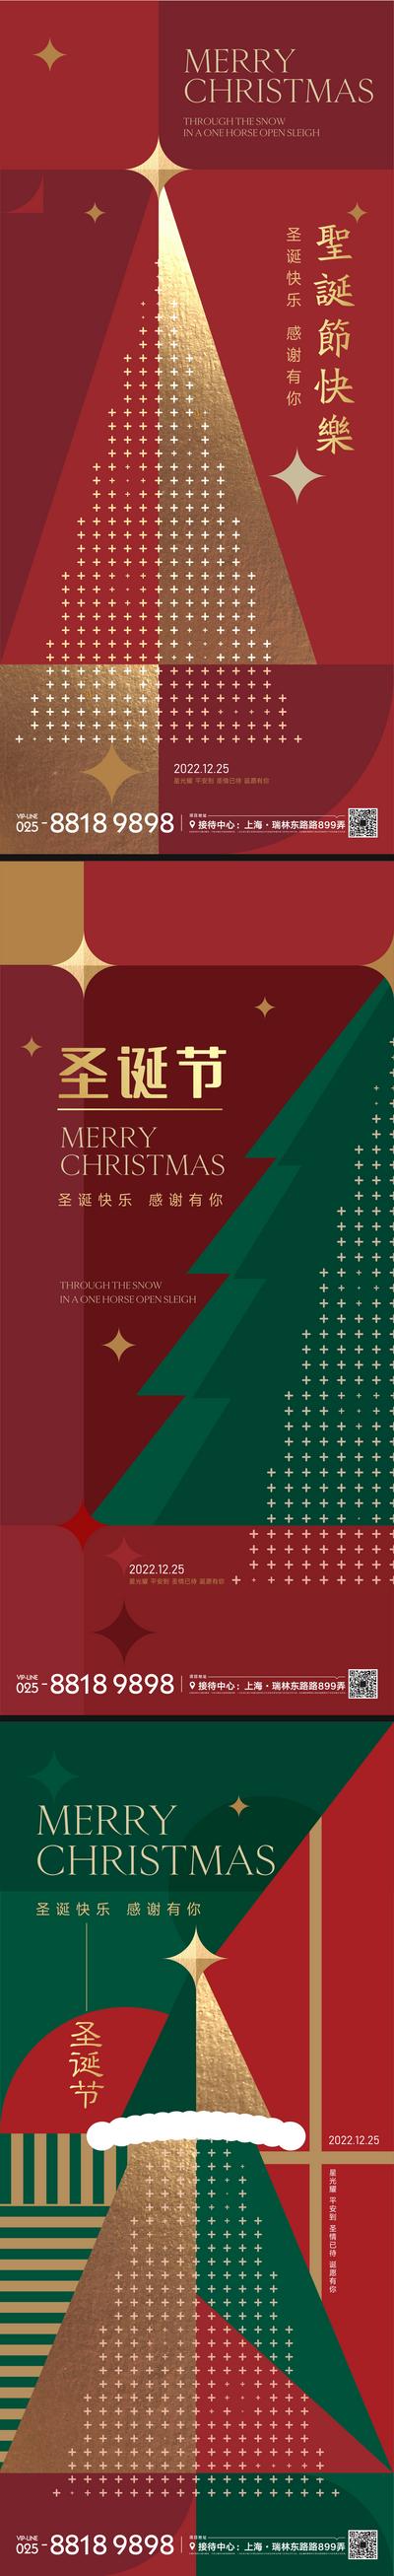 南门网 海报 公历节日 圣诞节  红金 圣诞树 星星 平安夜 版式 几何图形